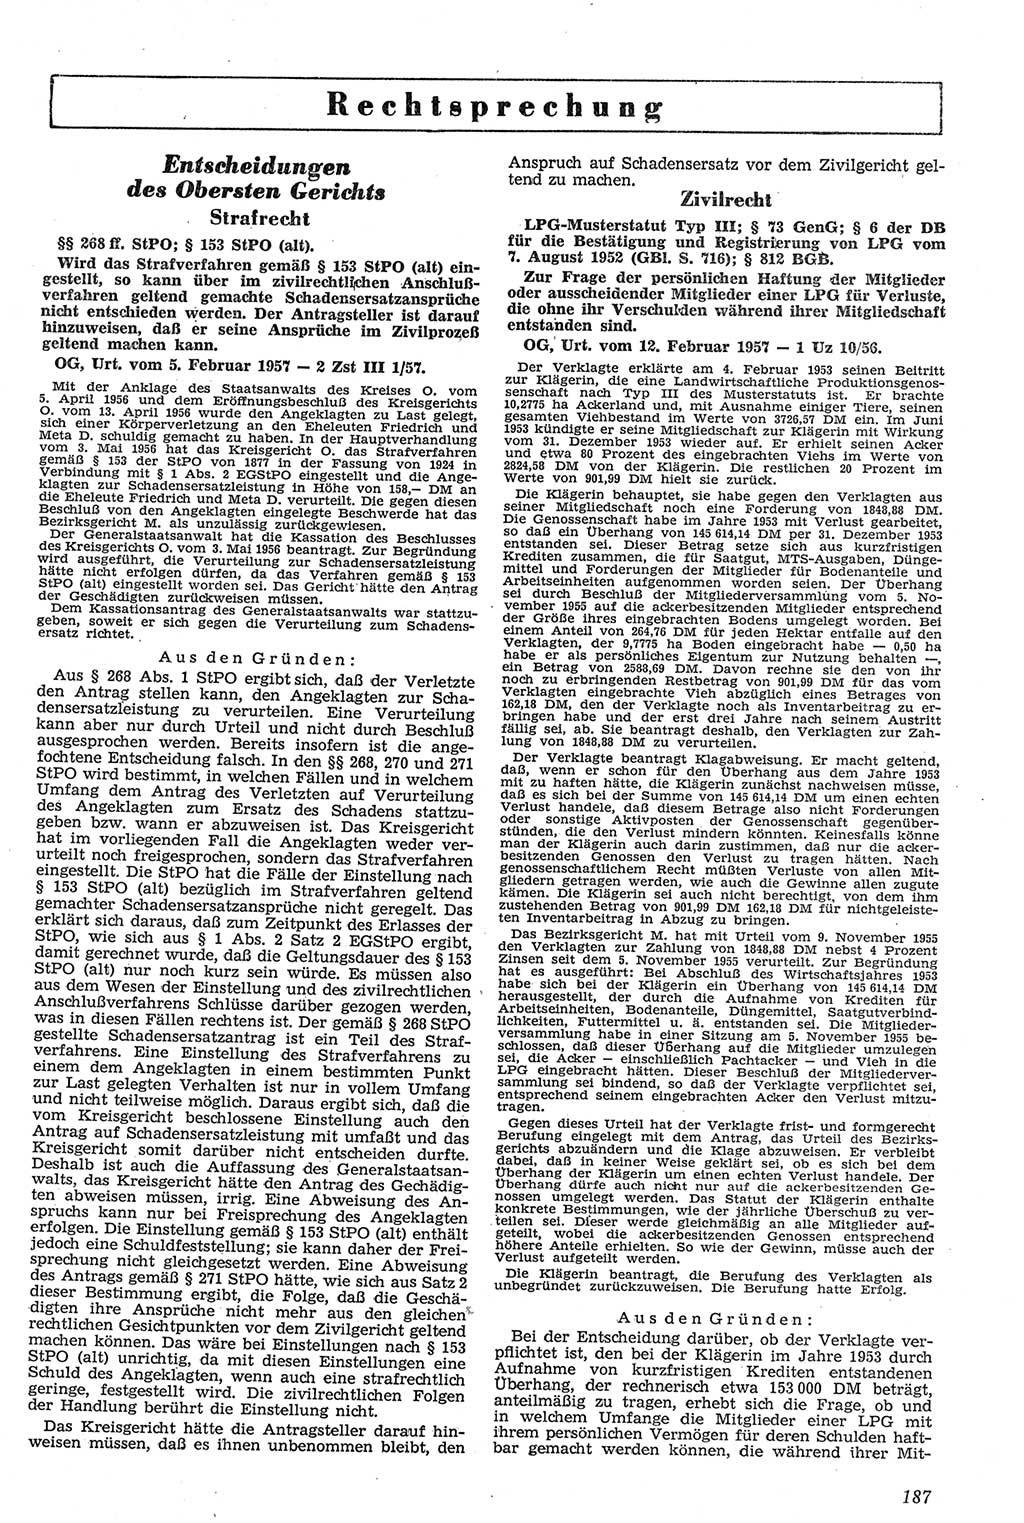 Neue Justiz (NJ), Zeitschrift für Recht und Rechtswissenschaft [Deutsche Demokratische Republik (DDR)], 11. Jahrgang 1957, Seite 187 (NJ DDR 1957, S. 187)